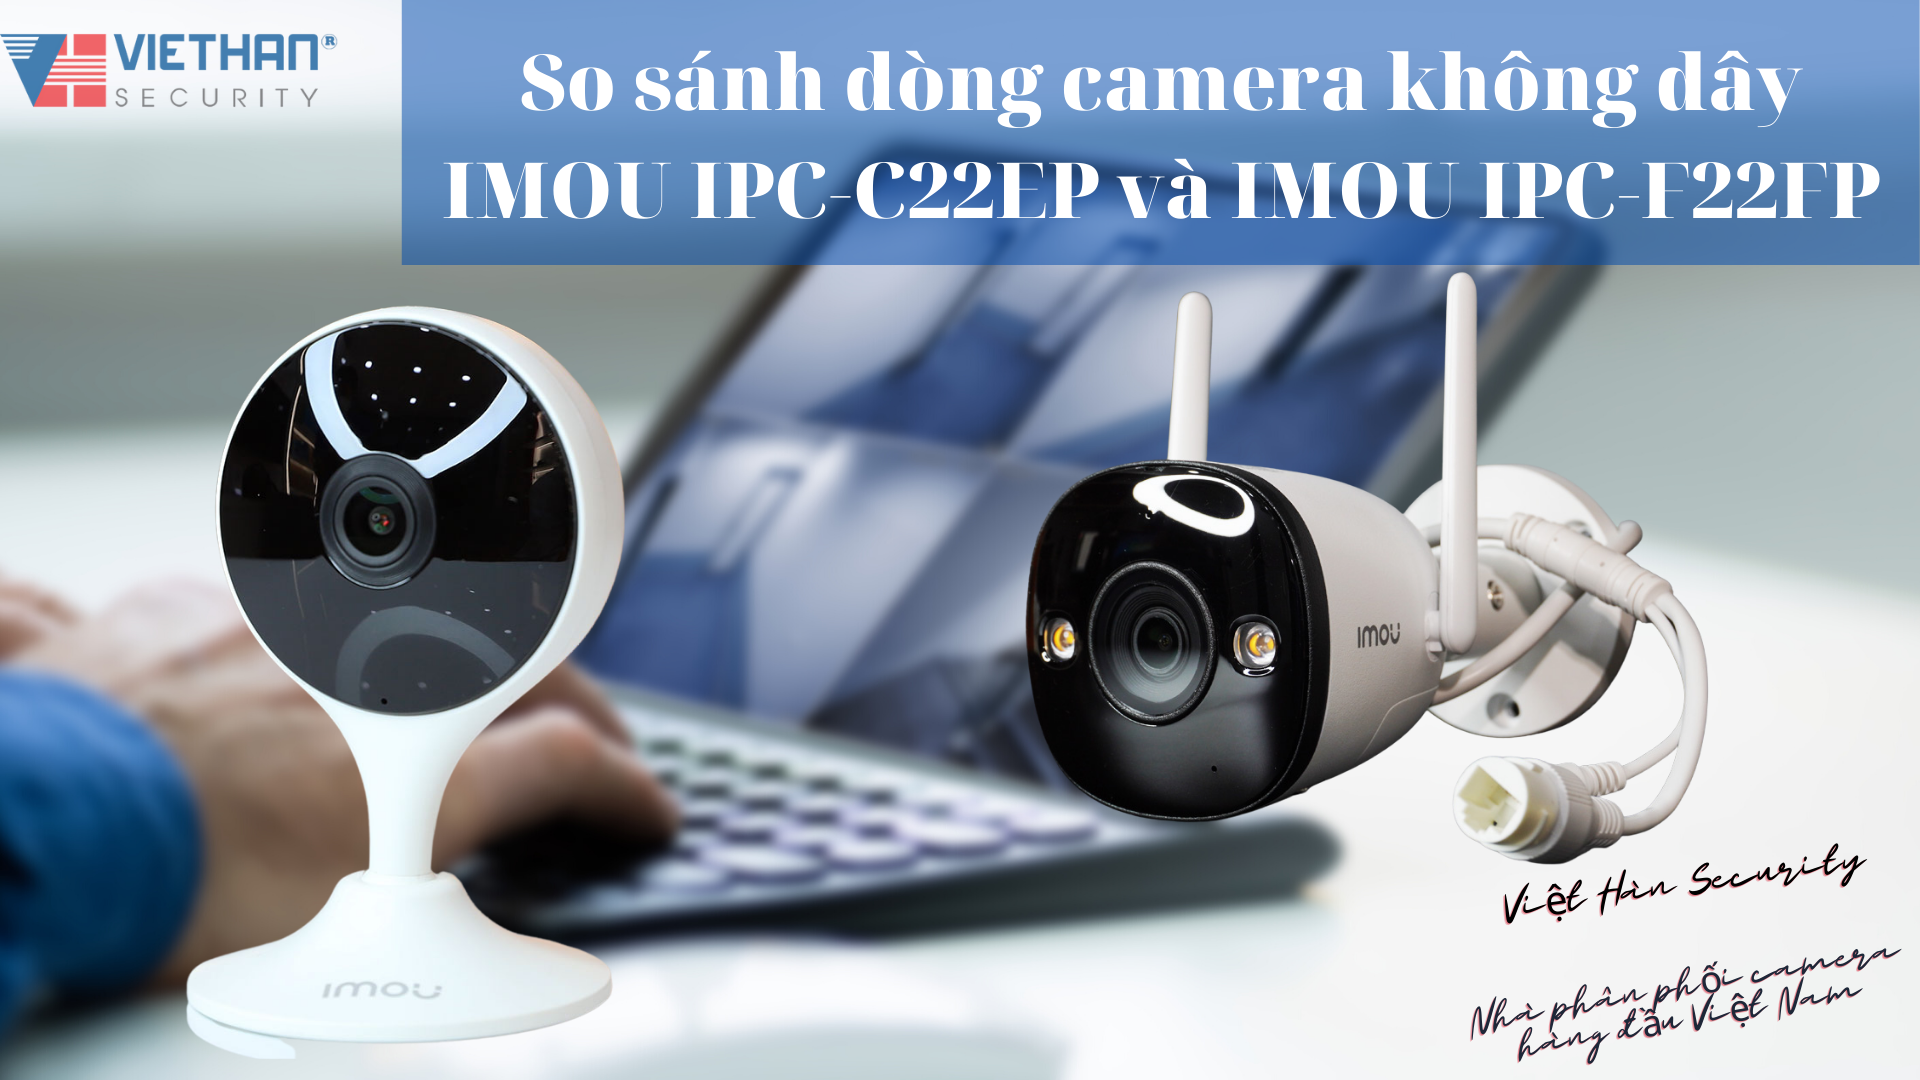 So sánh dòng camera không dây IMOU IPC-C22EP và IMOU IPC-F22FP